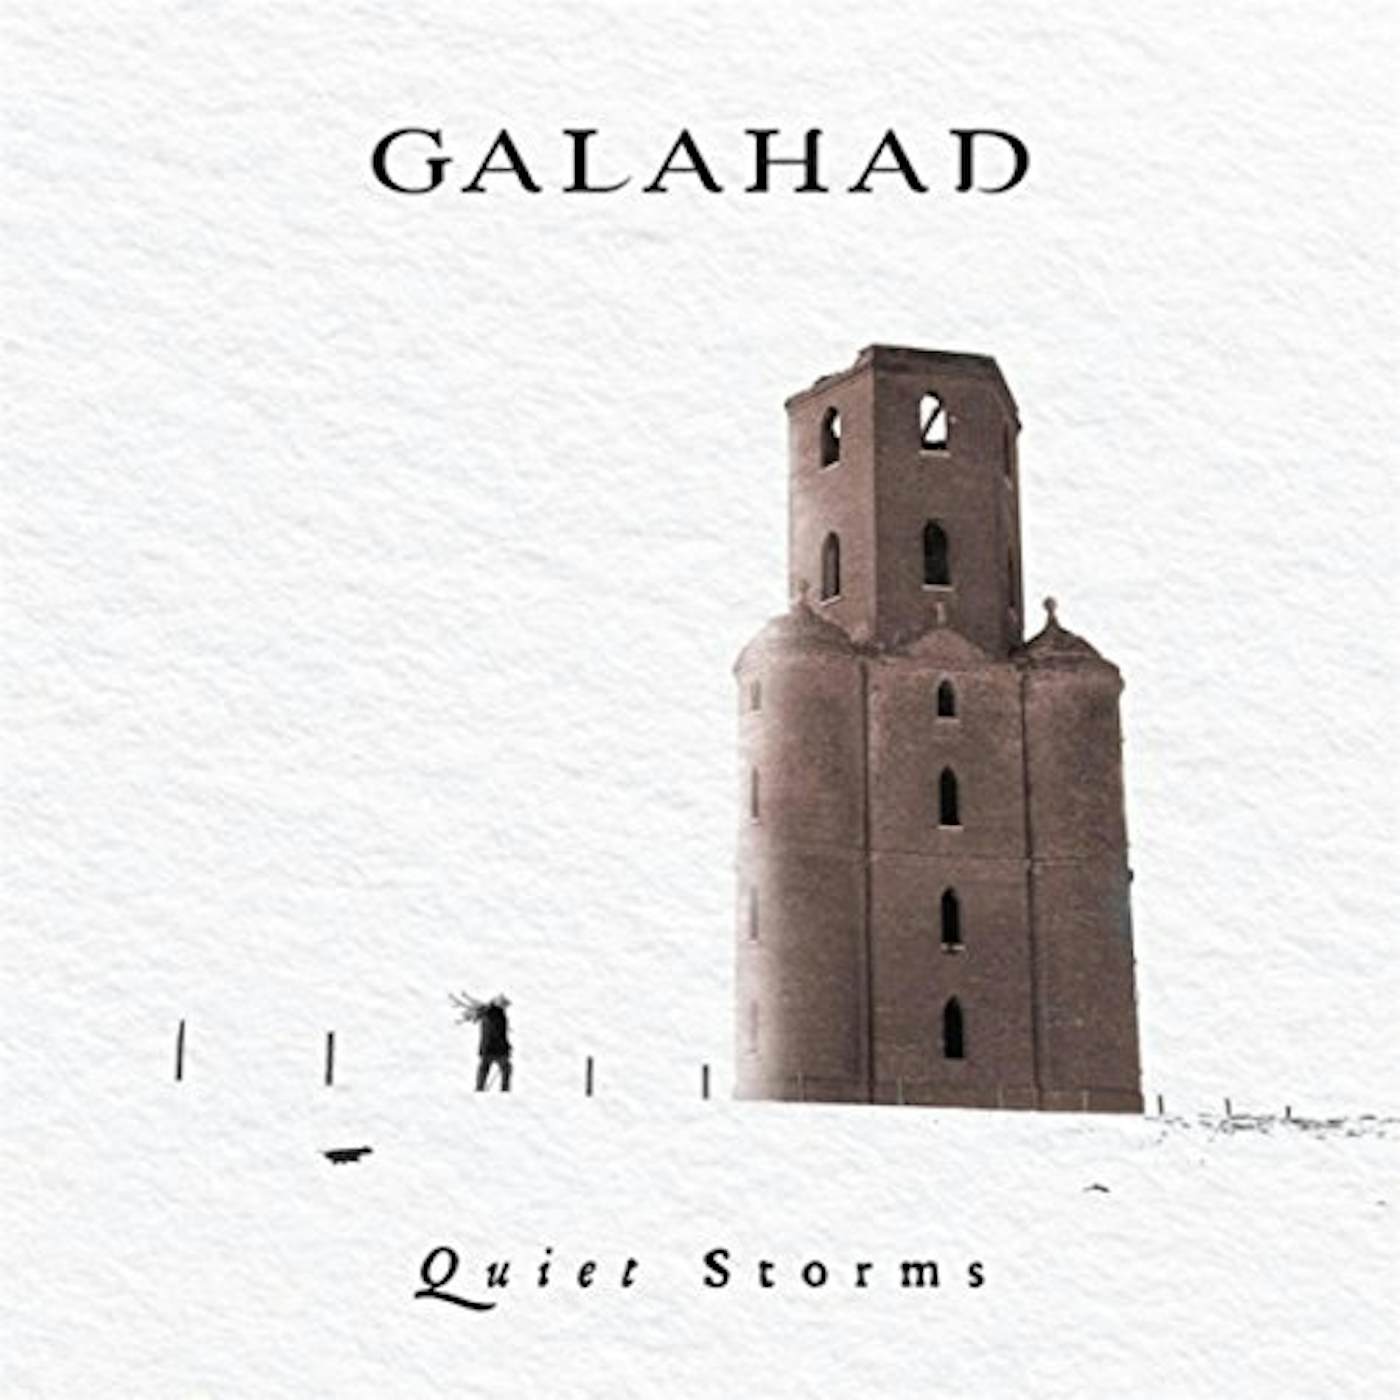 Galahad QUIET STORMS CD